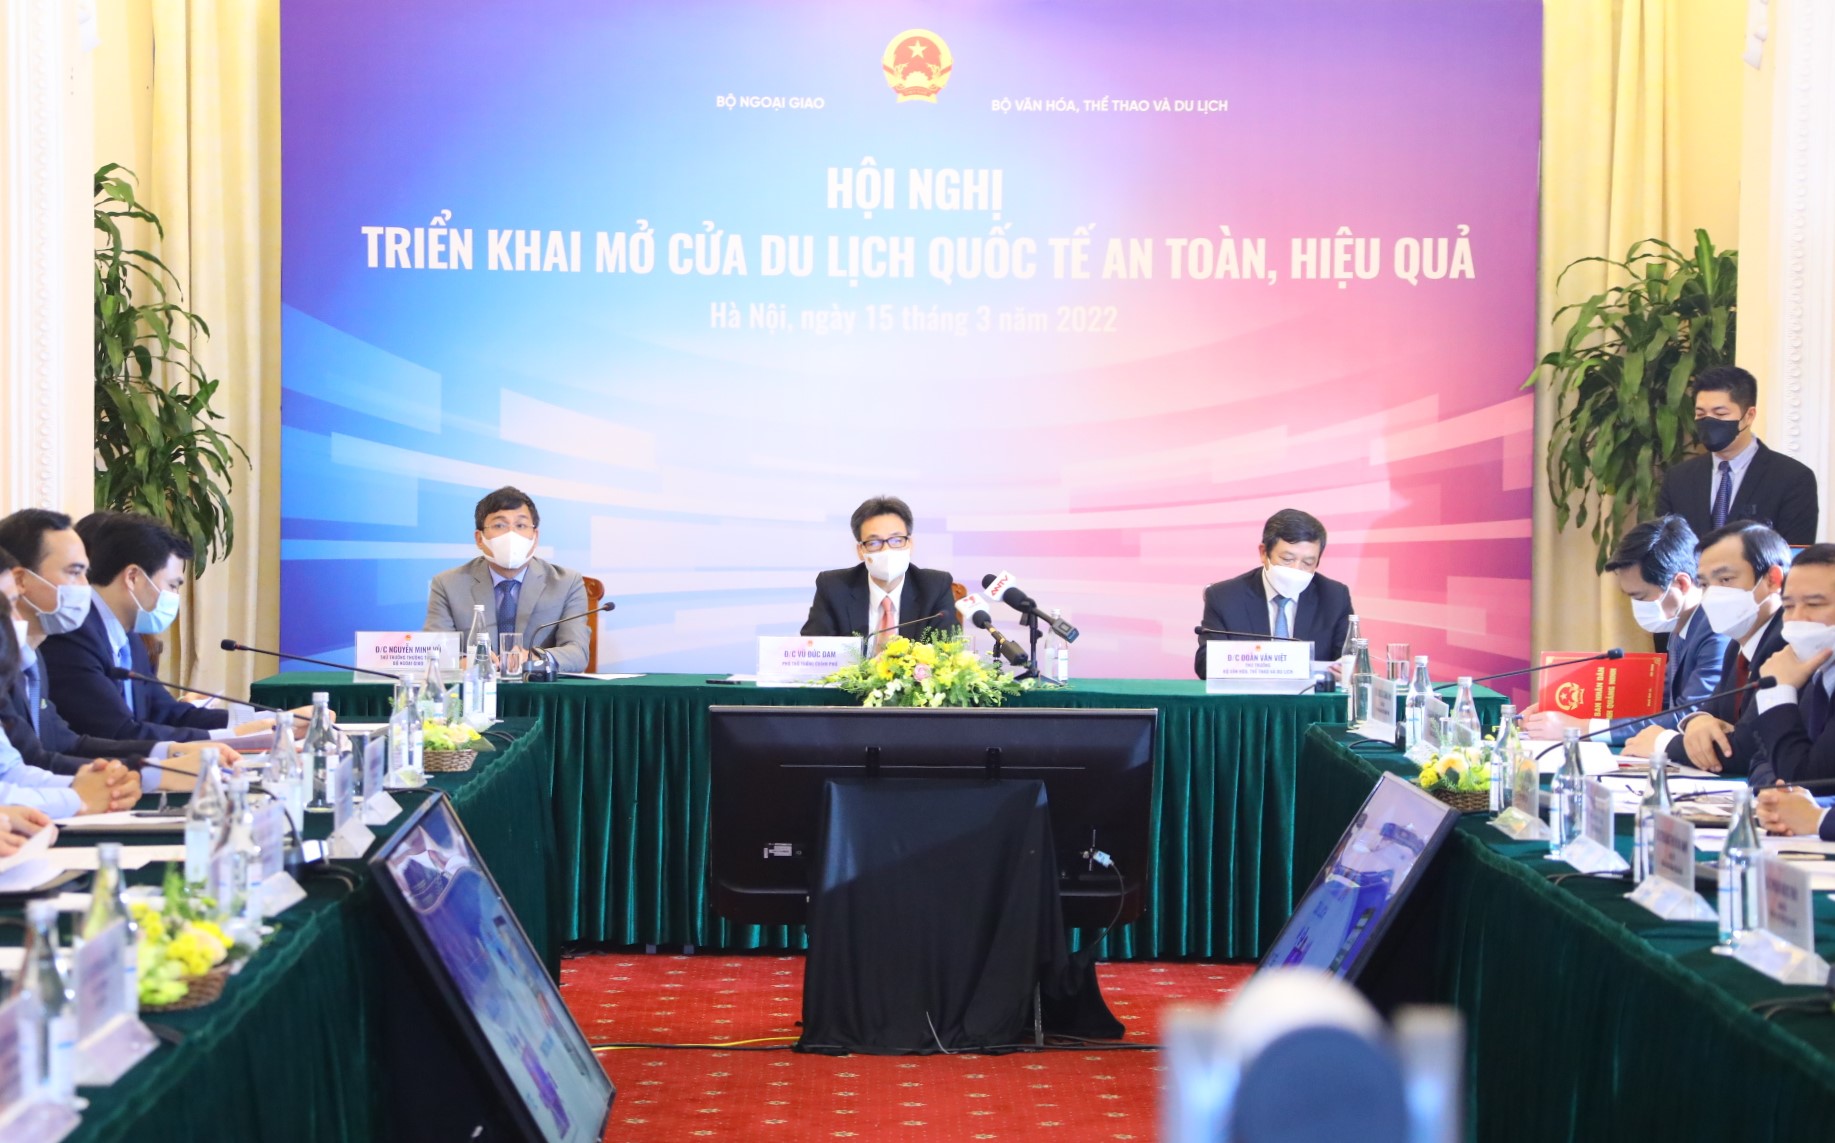 Phó Thủ tướng Vũ Đức Đam: Các cơ quan đại diện Việt Nam ở nước ngoài cần tích cực đấu nối, xúc tiến mở lại các hoạt động du lịch - Ảnh 1.